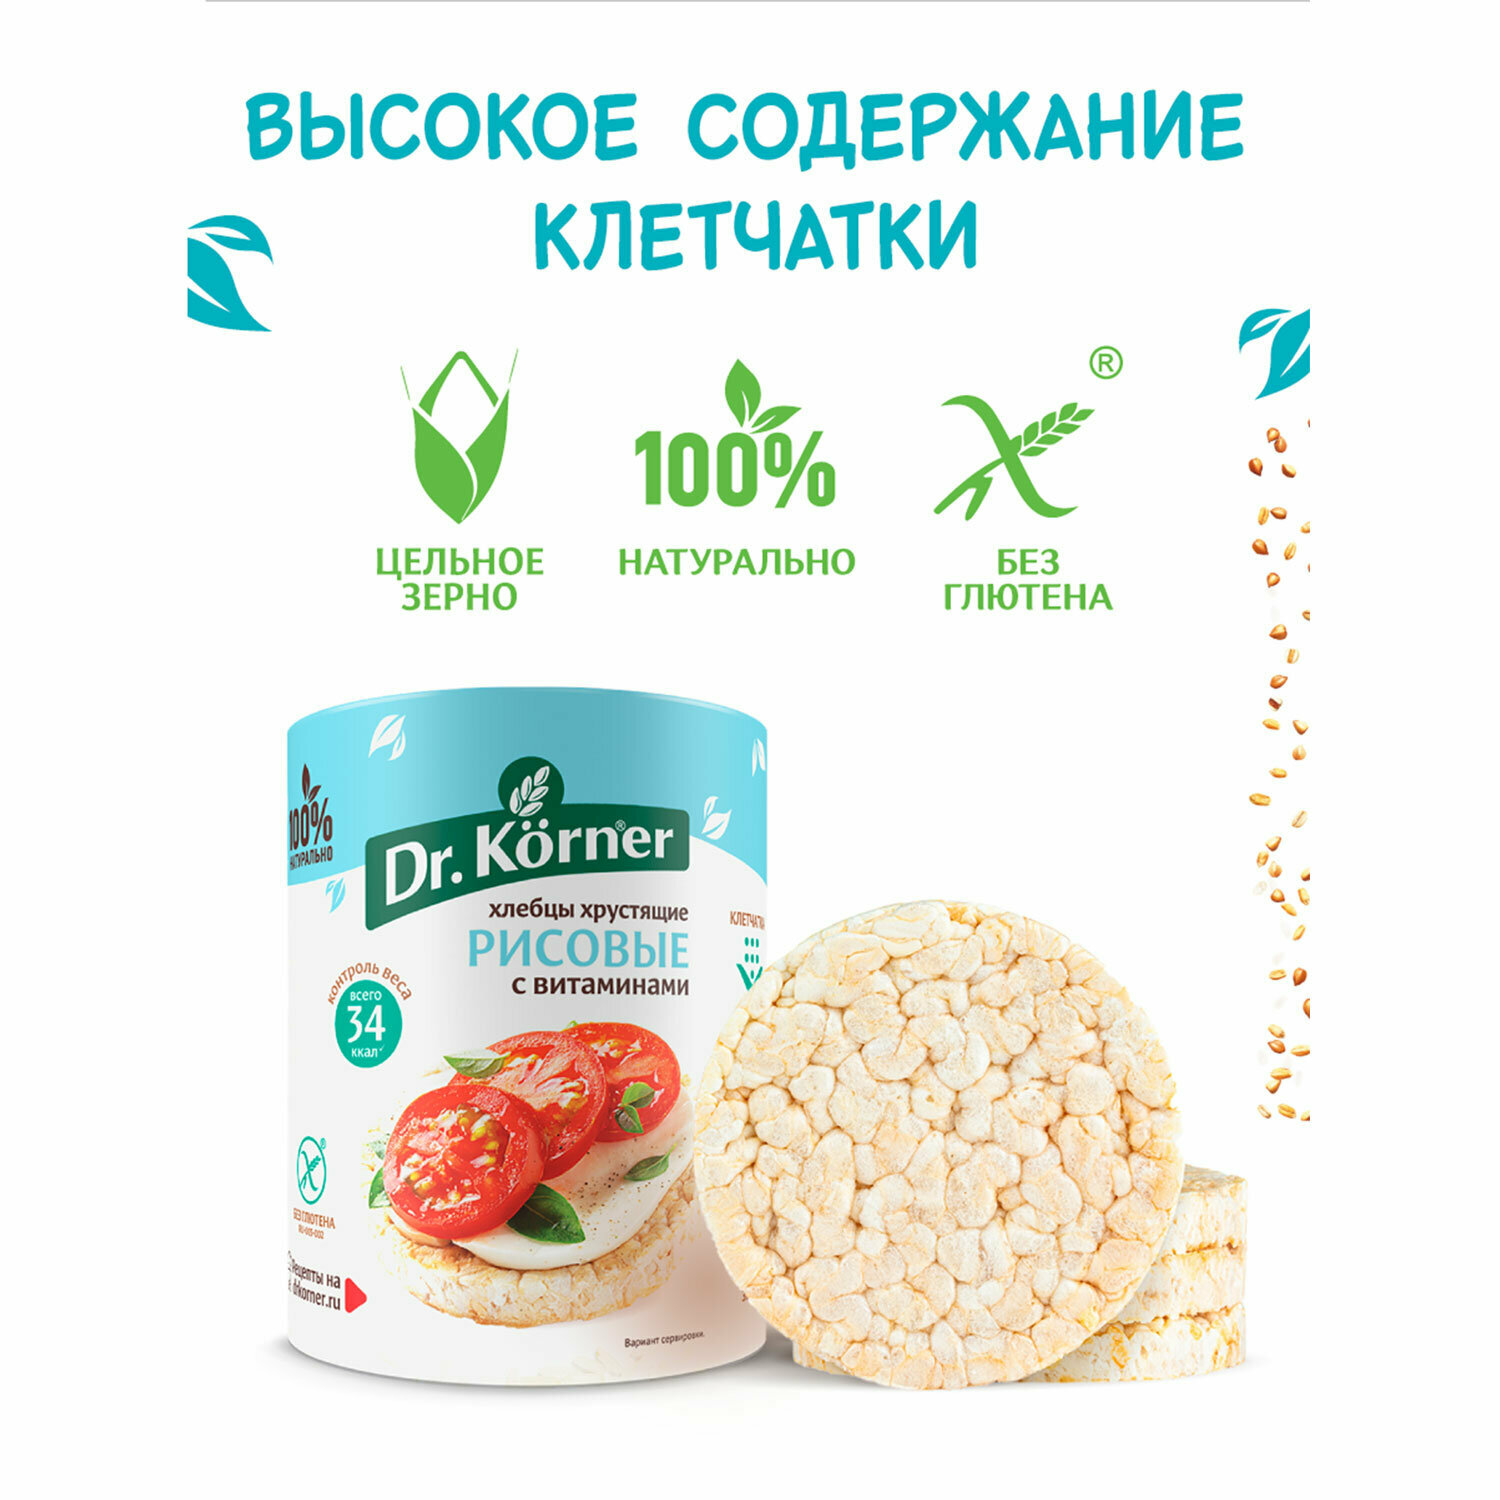 Хлебцы DR.KORNER "Рисовые" с витаминами, хрустящие, 100 г, пакет, 601090025 В комплекте: 2шт.